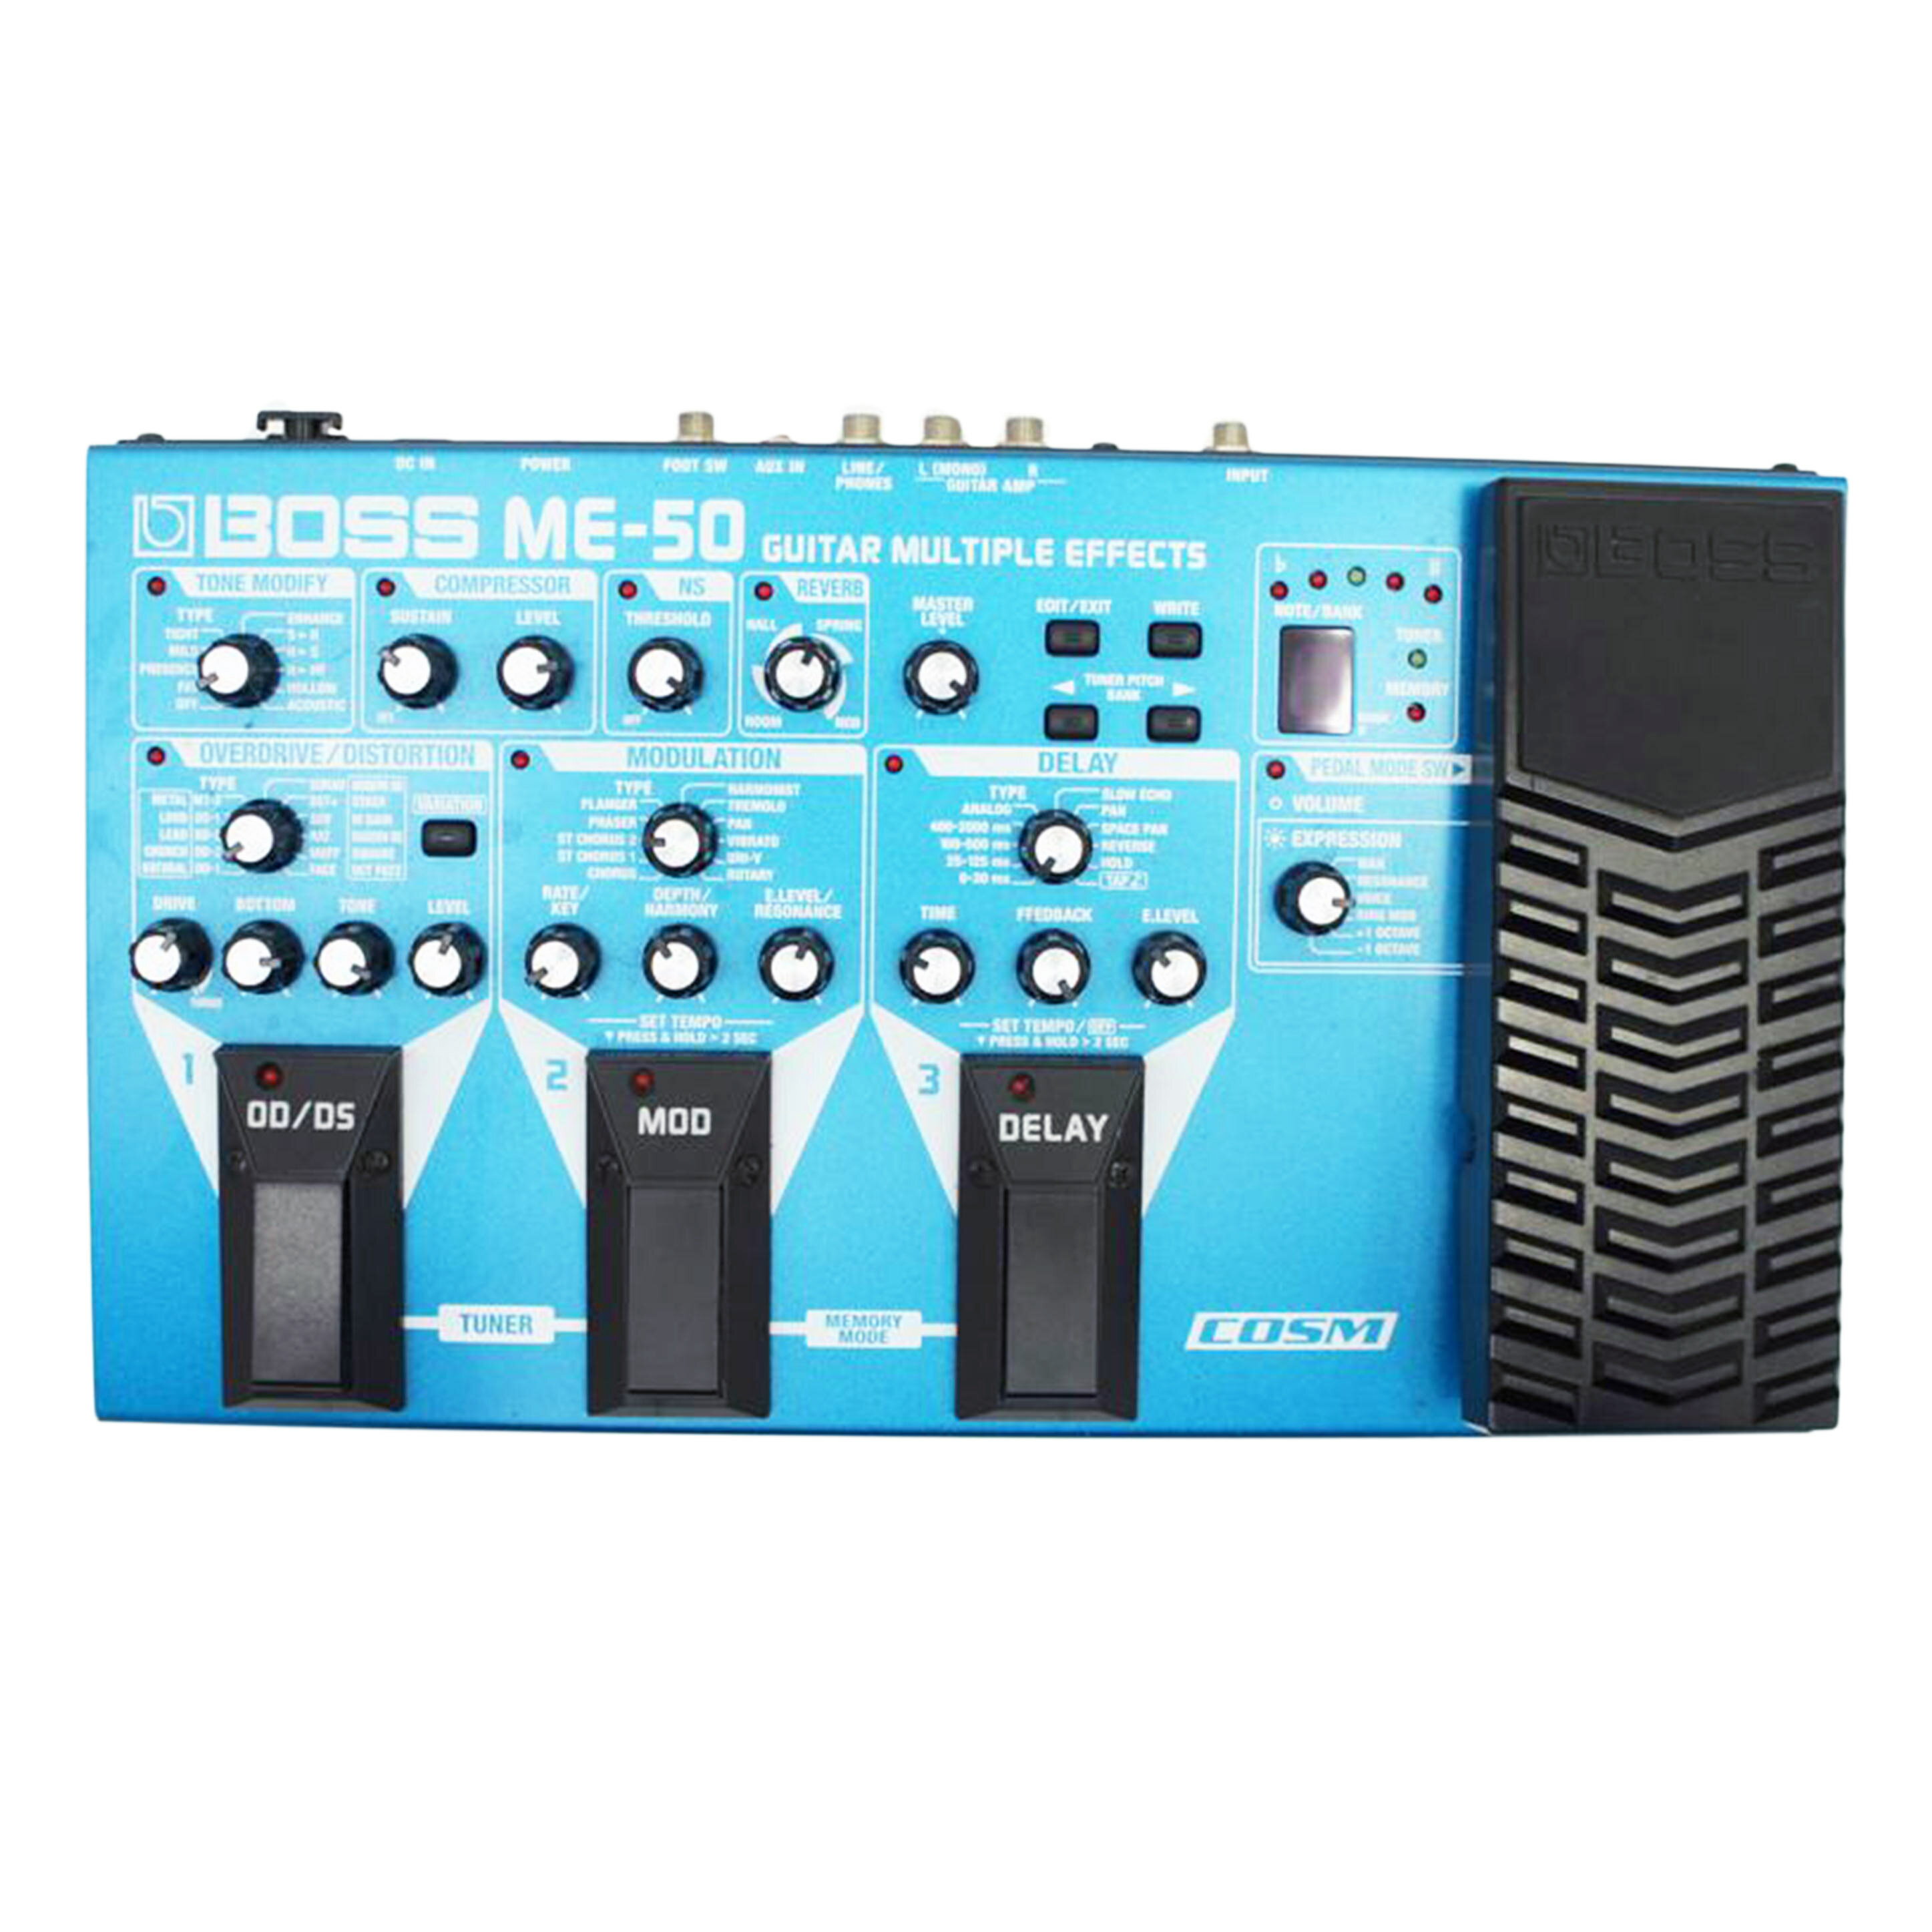 EXTC-Stereo Radial レコーディング レコーディング周辺機器